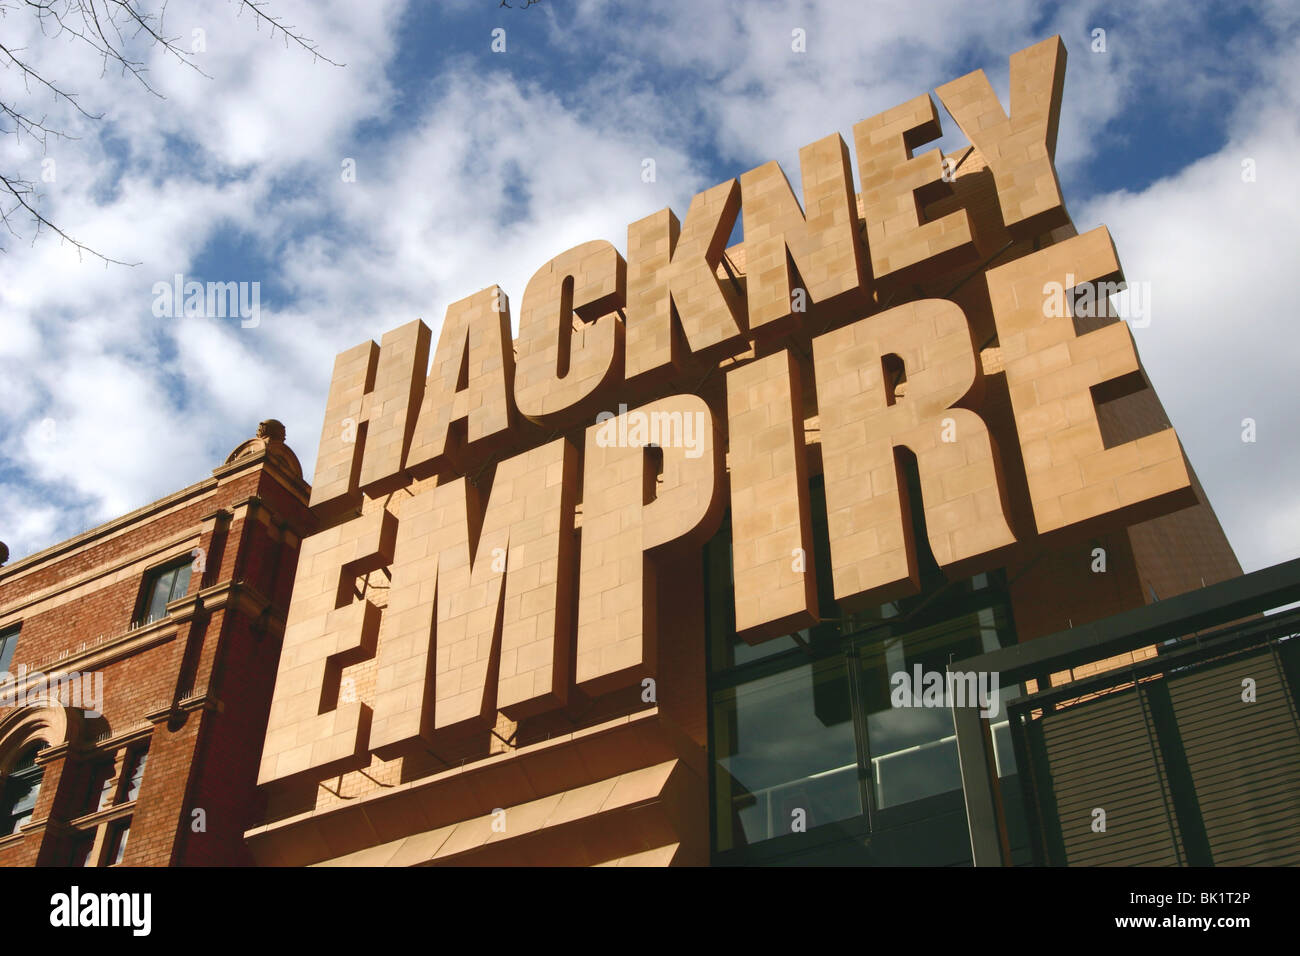 Hackney Empire, London Stock Photo